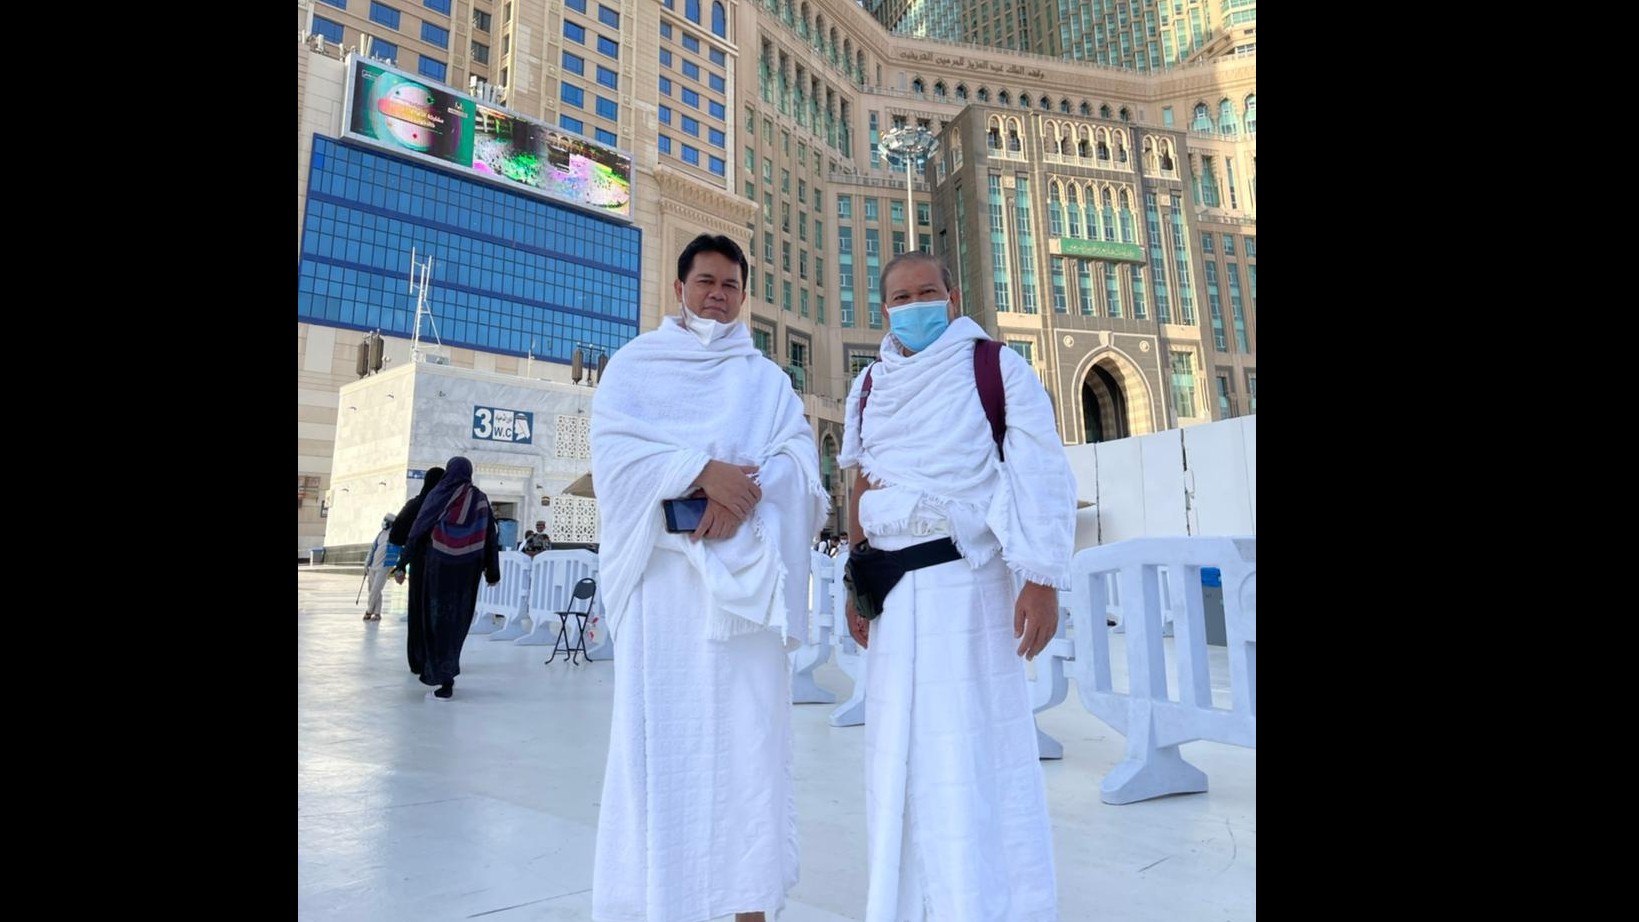 Konsul Haji KJRI Jeddah Endang Jumali (kiri) bersama Konjen RI Jeddah di pelataran Masjidil Haram